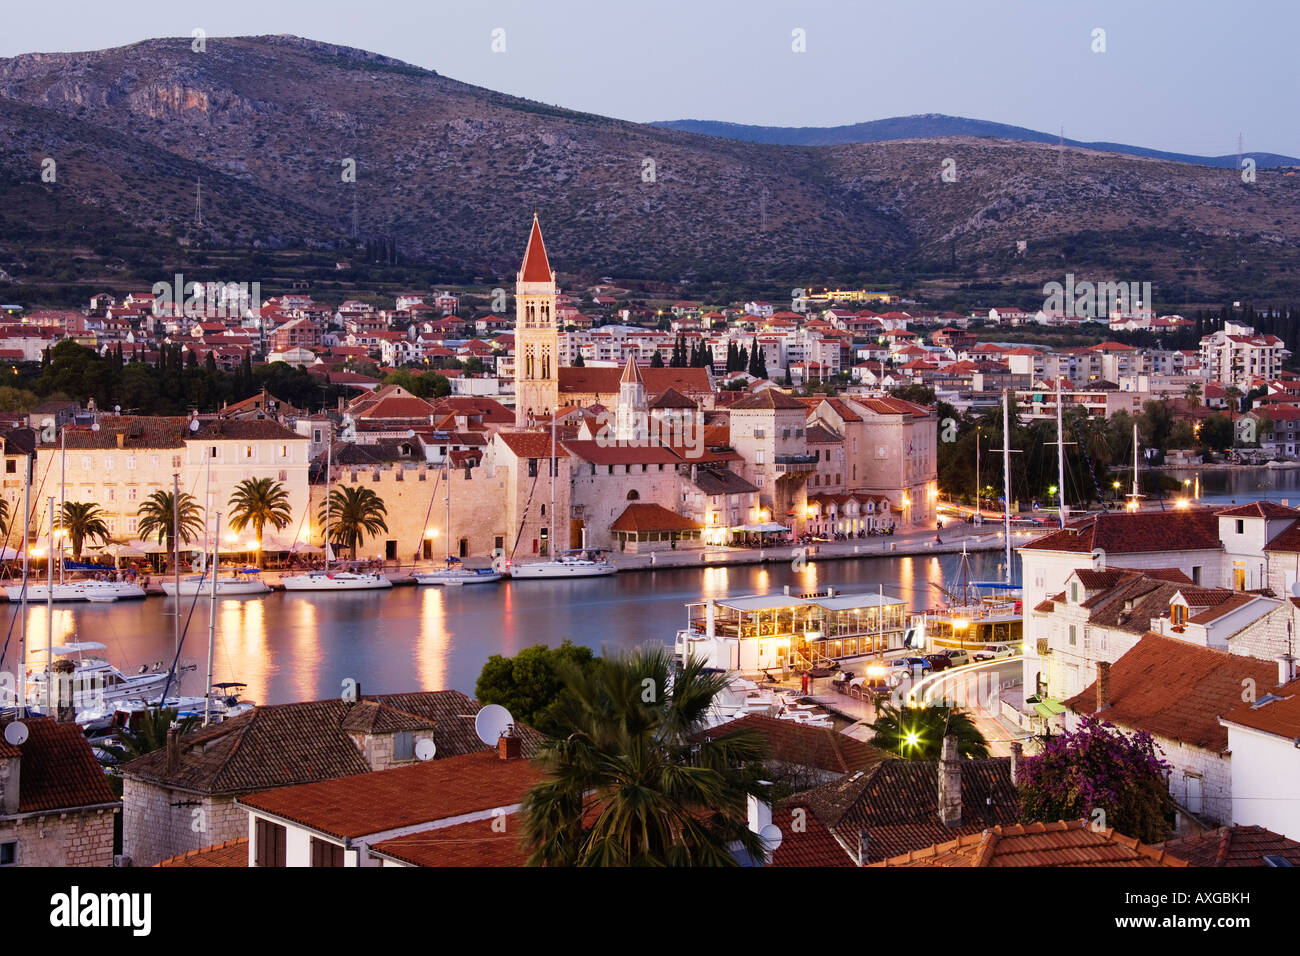 Town of Trogir at Dusk, Croatia Stock Photo